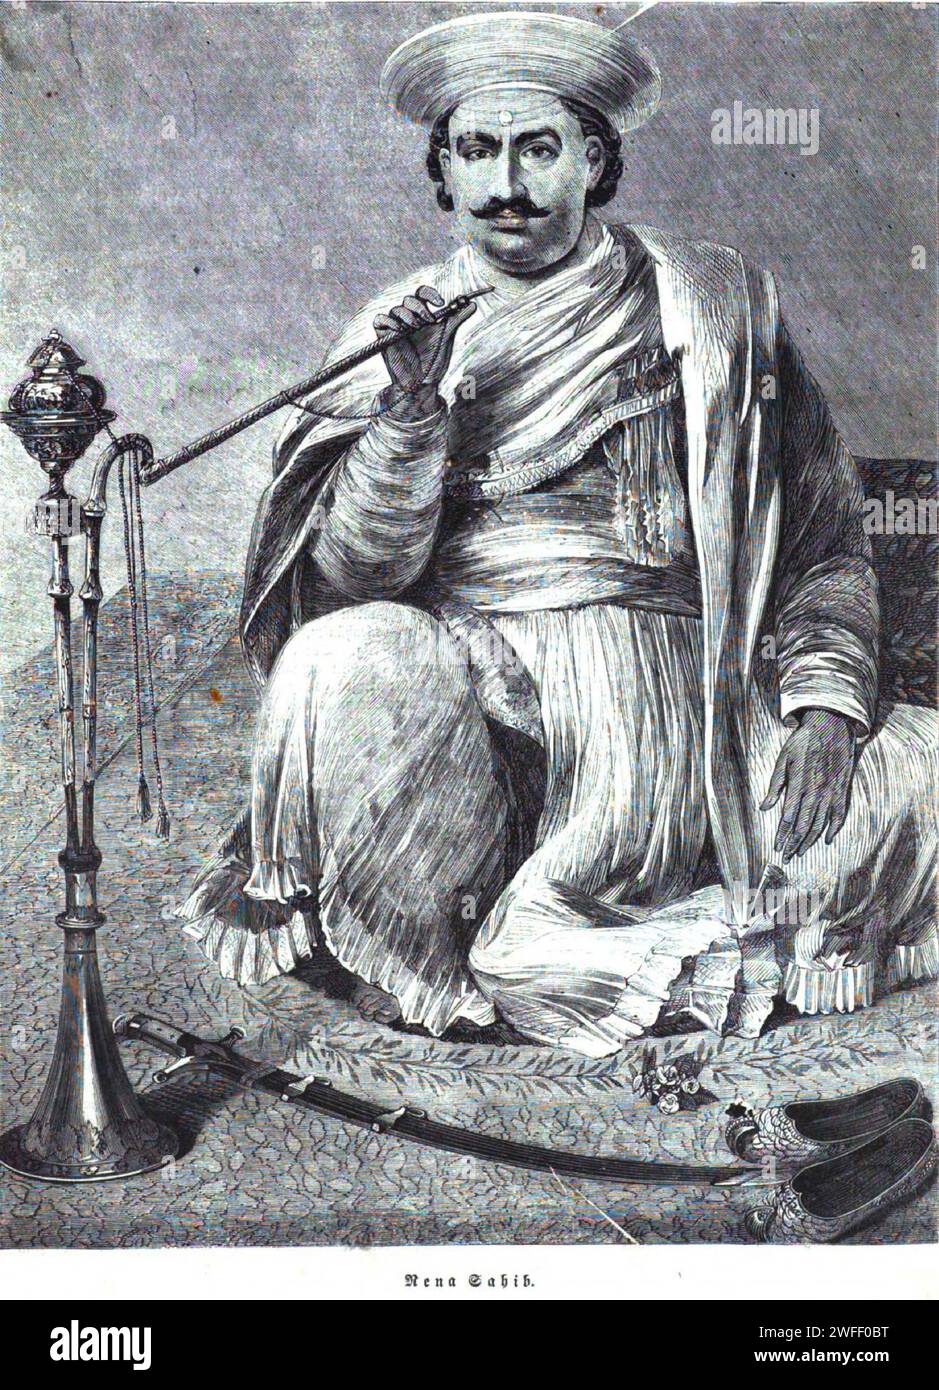 Portrait de Nana Saheb Peshwa II (1824 – 1859), né sous le nom de Dhondu Pant, un Peshwa indien de l'empire Maratha, aristocrate et combattant, qui a dirigé la rébellion à Cawnpore (Kanpur) lors de la rébellion de 1857 contre la Compagnie des Indes orientales.publié vers 1880 Banque D'Images